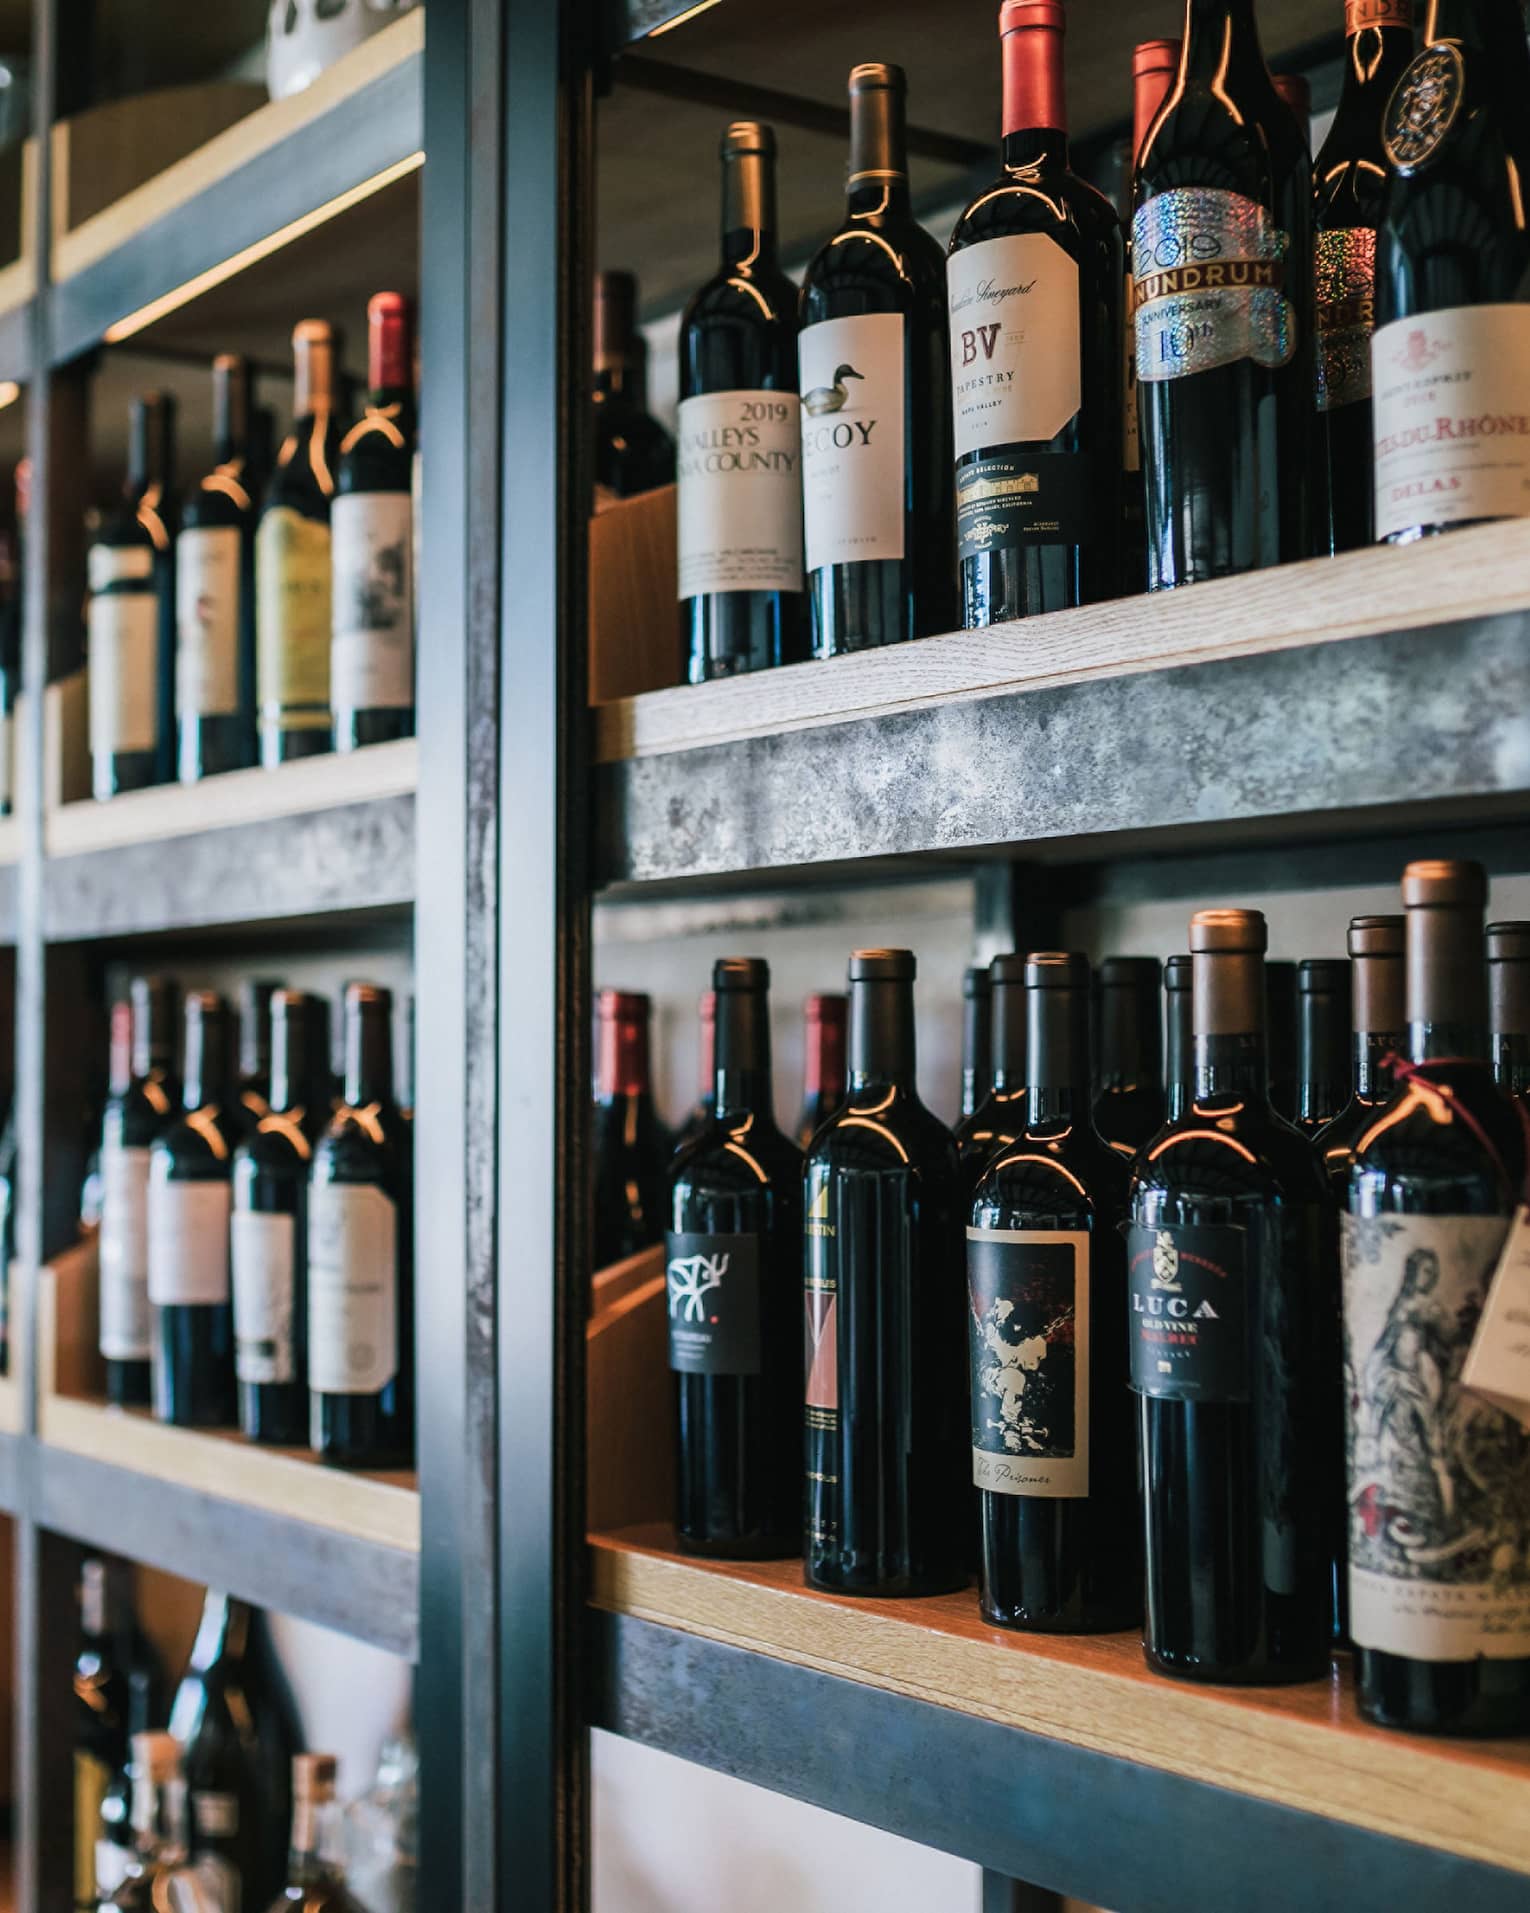 Shelves of wine.